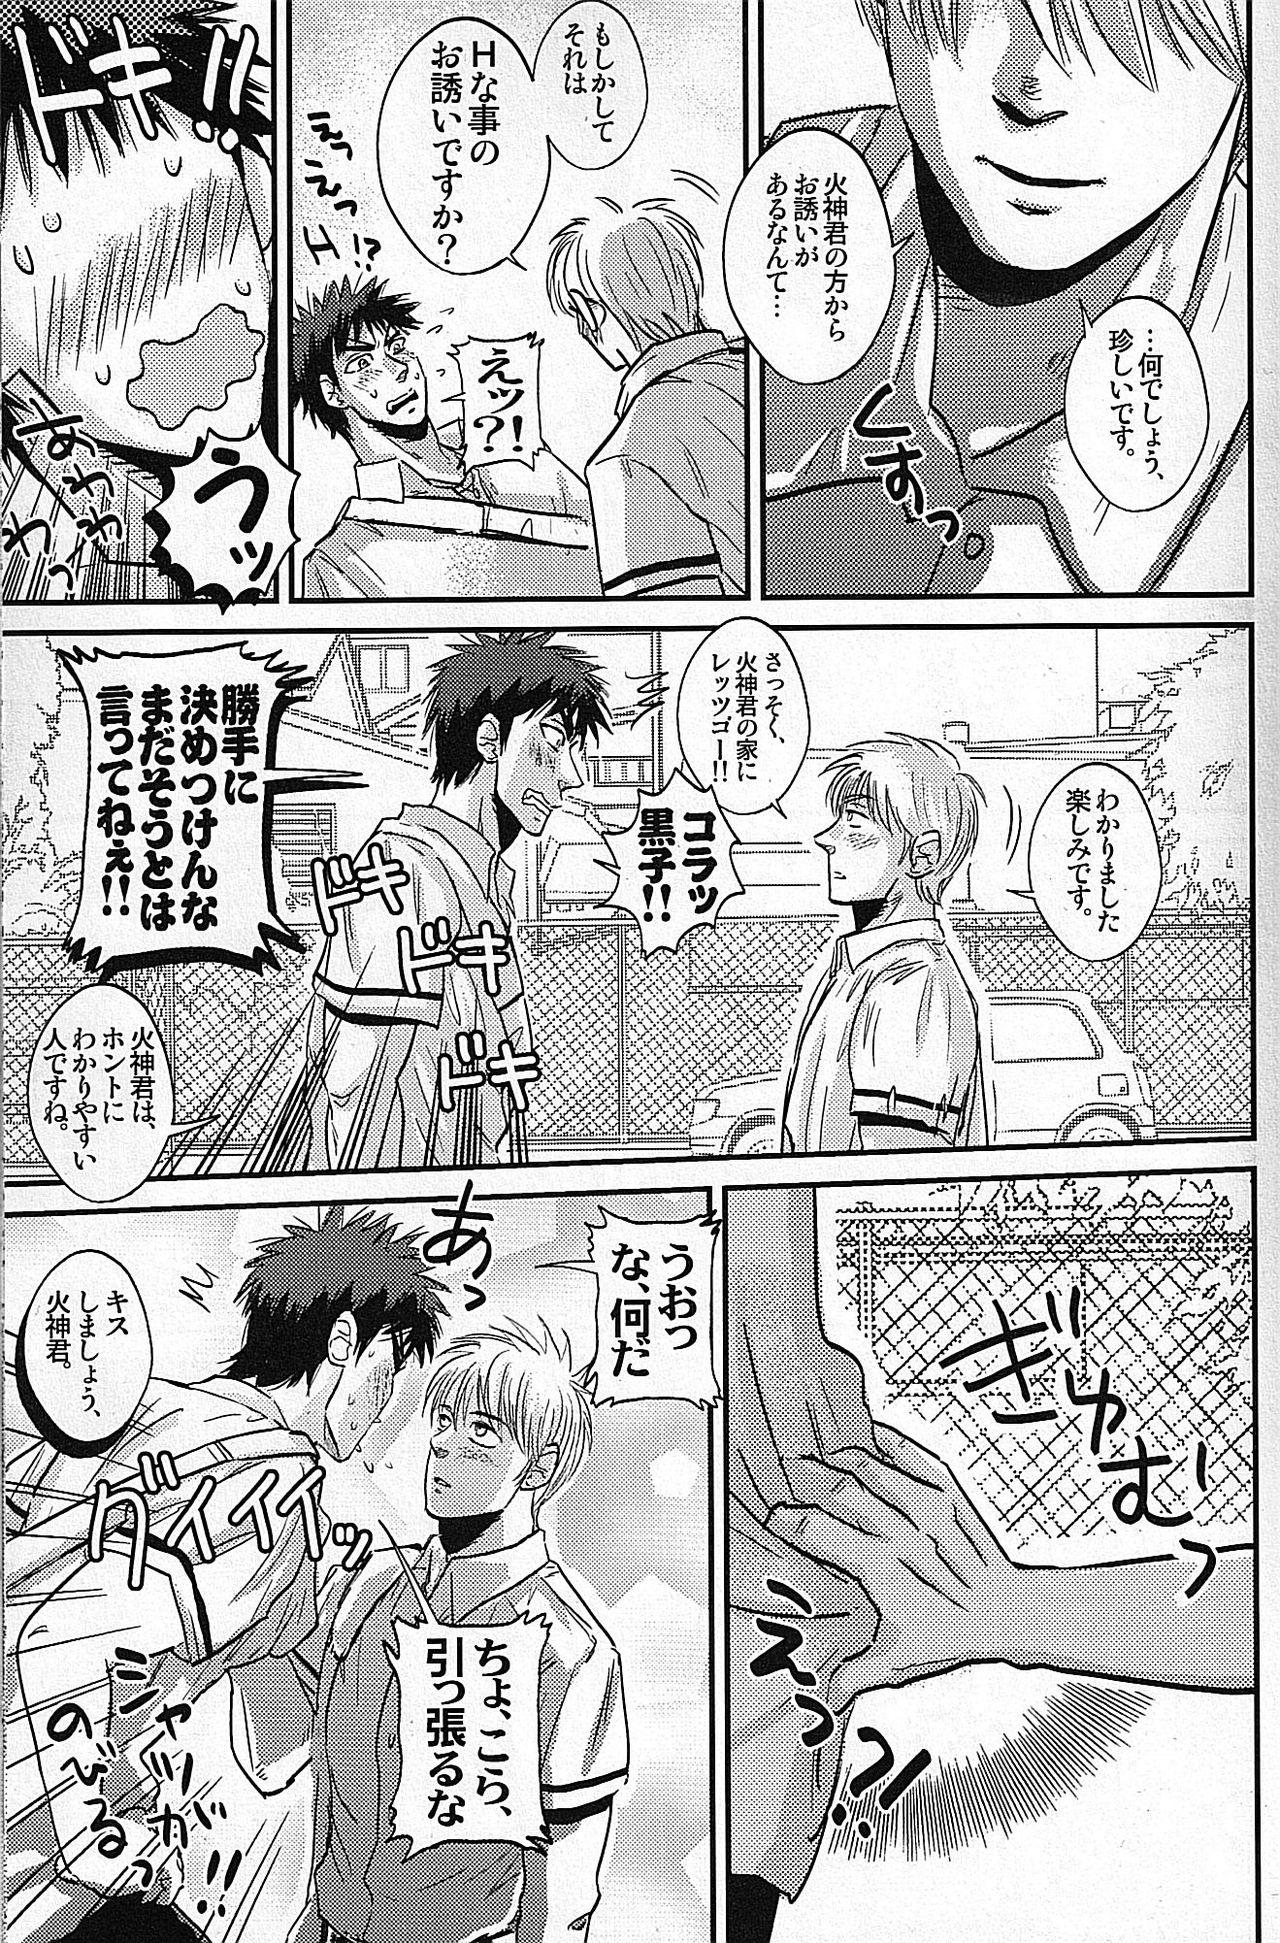 Mommy Hi Shinkun no Tori Setsu. - Kuroko no basuke Transsexual - Page 4